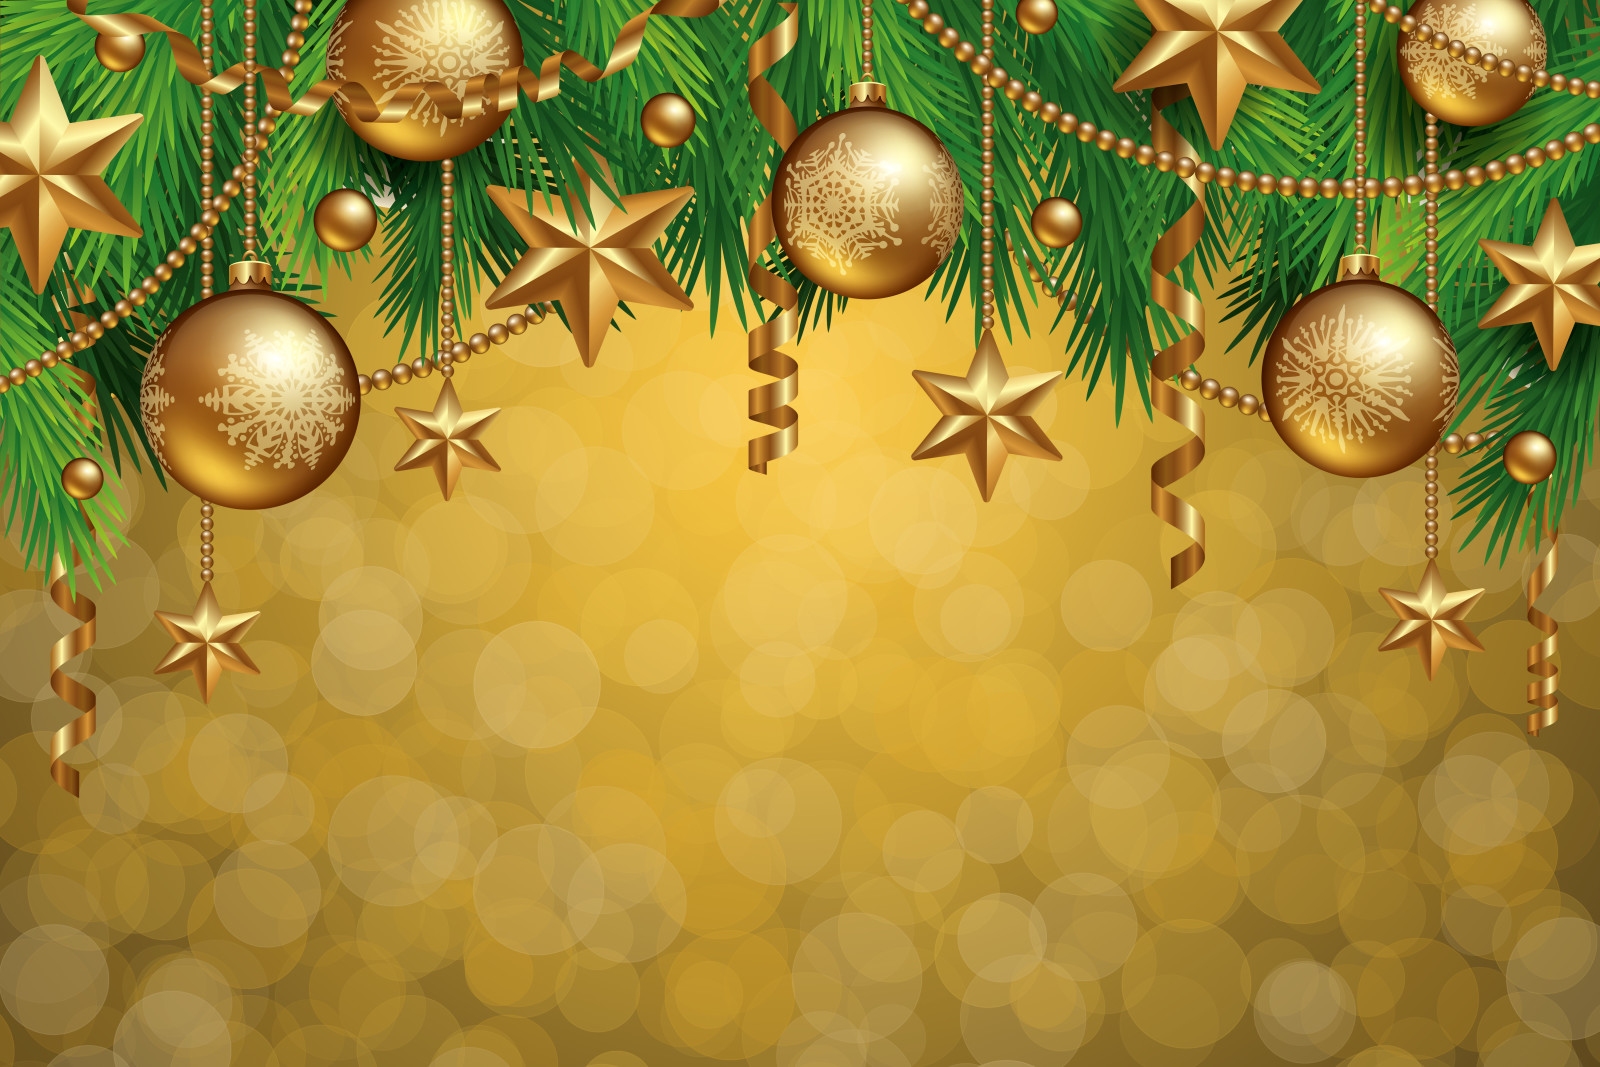 불알, 나무, 새해, 크리스마스, 장식, 명랑한, 황금